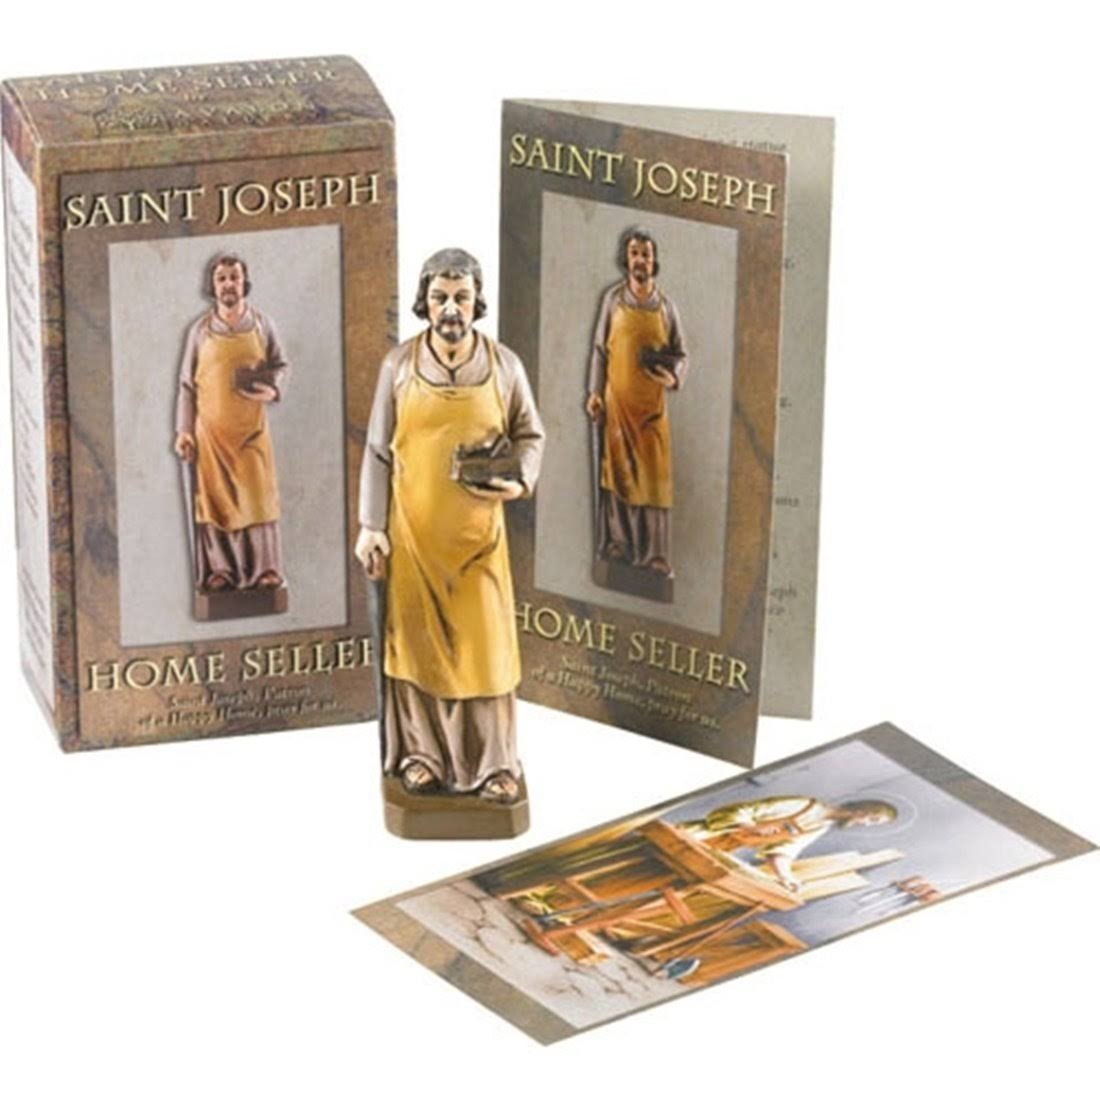 St. Joseph Home Seller Statue Kit